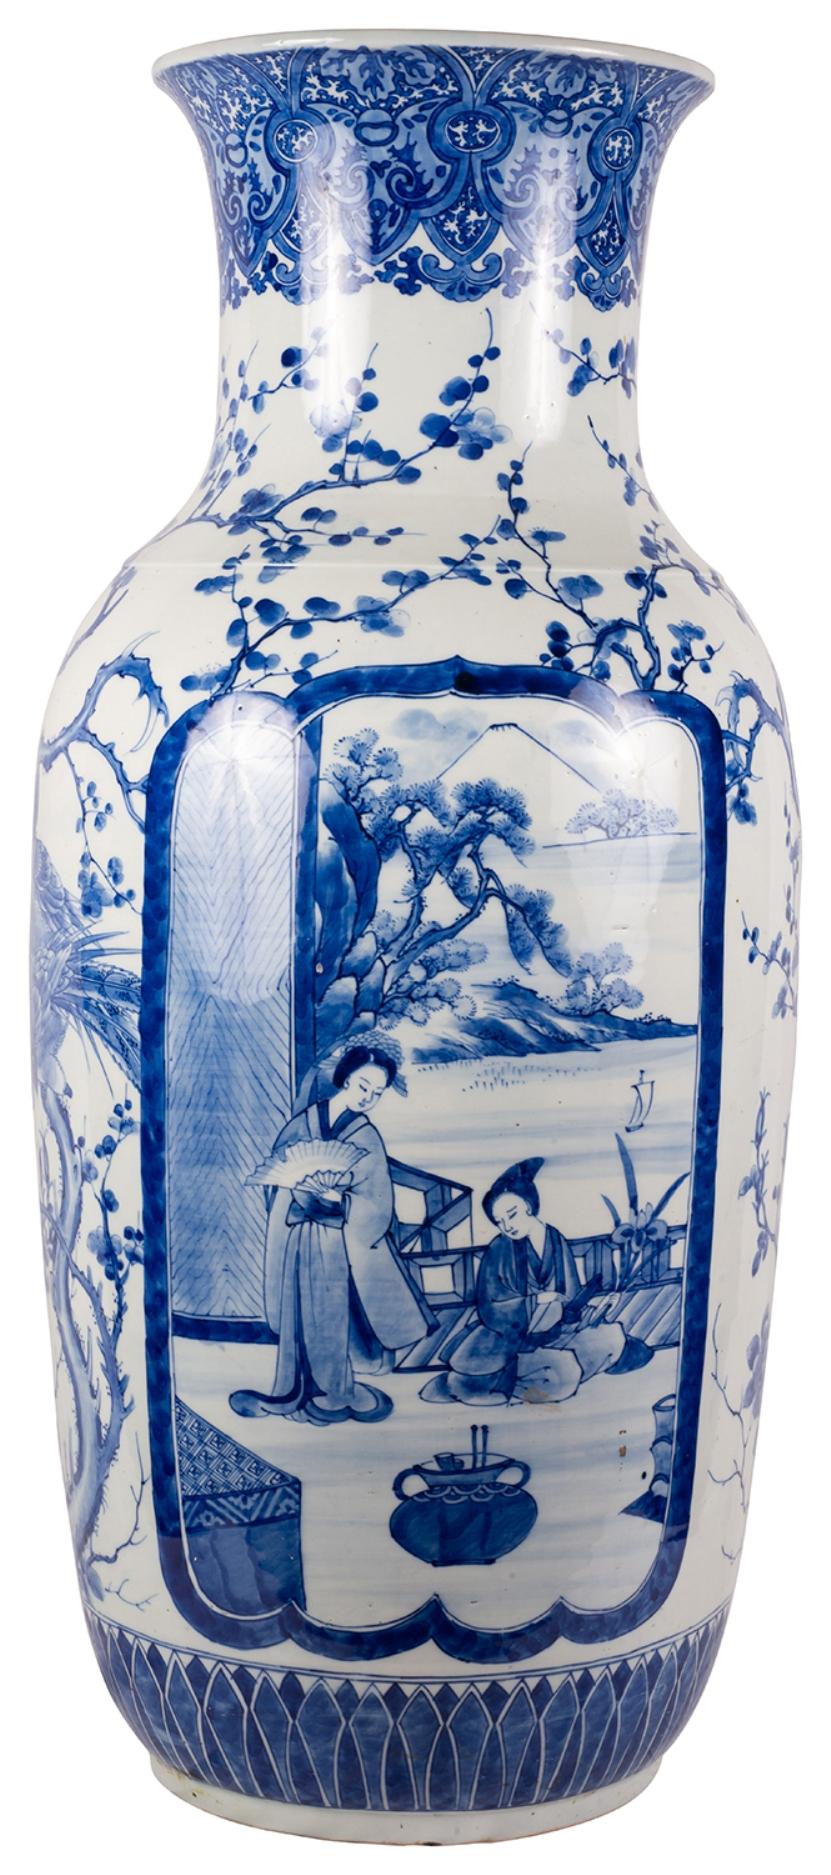 Ein sehr beeindruckendes Paar japanischer Vasen aus der Meiji-Periode (1868-1912) aus blauem und weißem Porzellan, jede mit wunderschönem klassischem Dekor am Hals und am Boden. Blütenbäume auf dem Boden und handgemalte Tafeln, auf denen